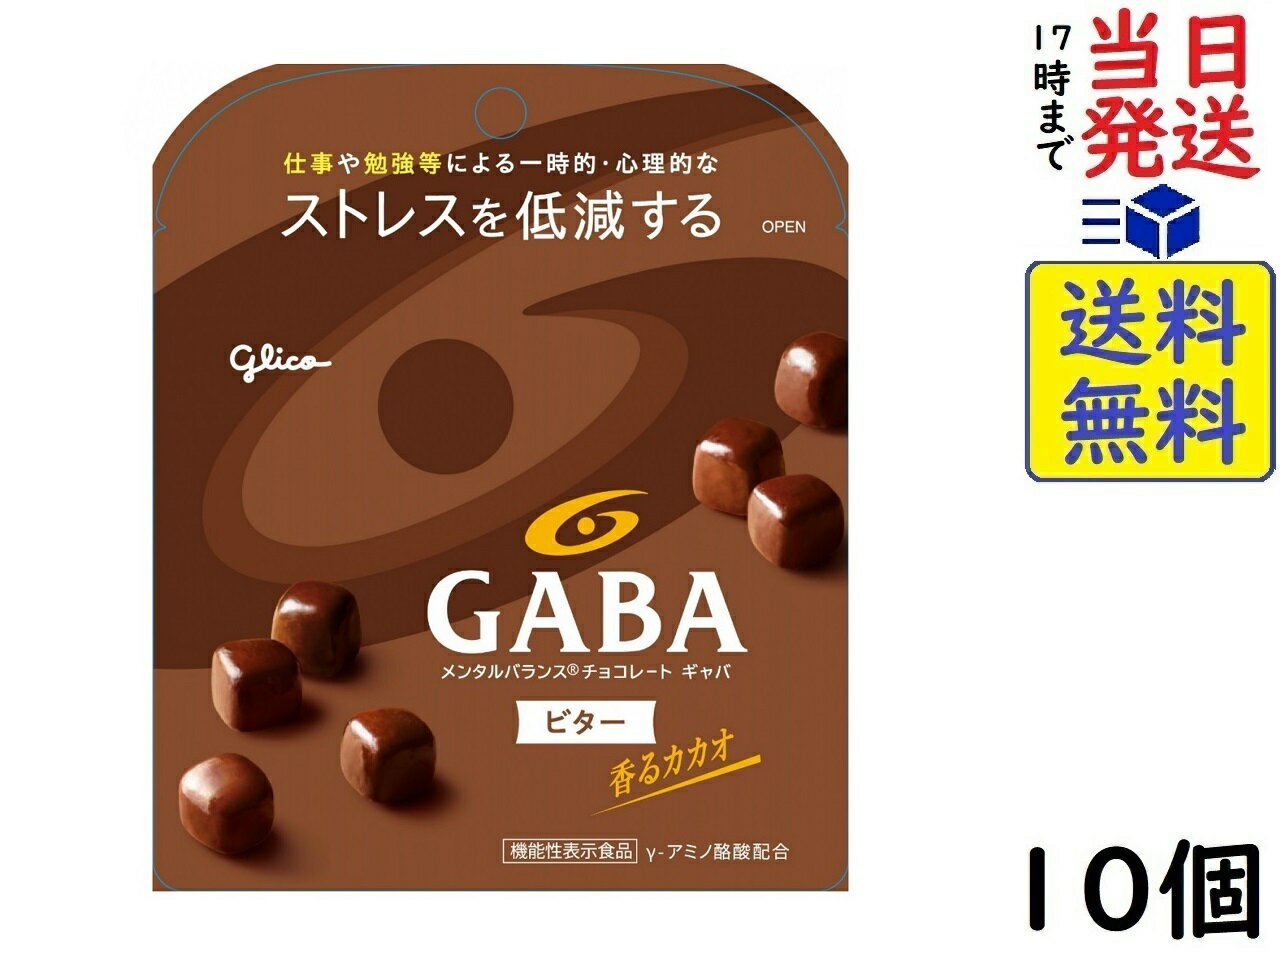 江崎グリコ GABA ギャバ(ビターチョコレート) スタンドパウチ 51g ×10個(機能性表示食品)賞味期限2025/02